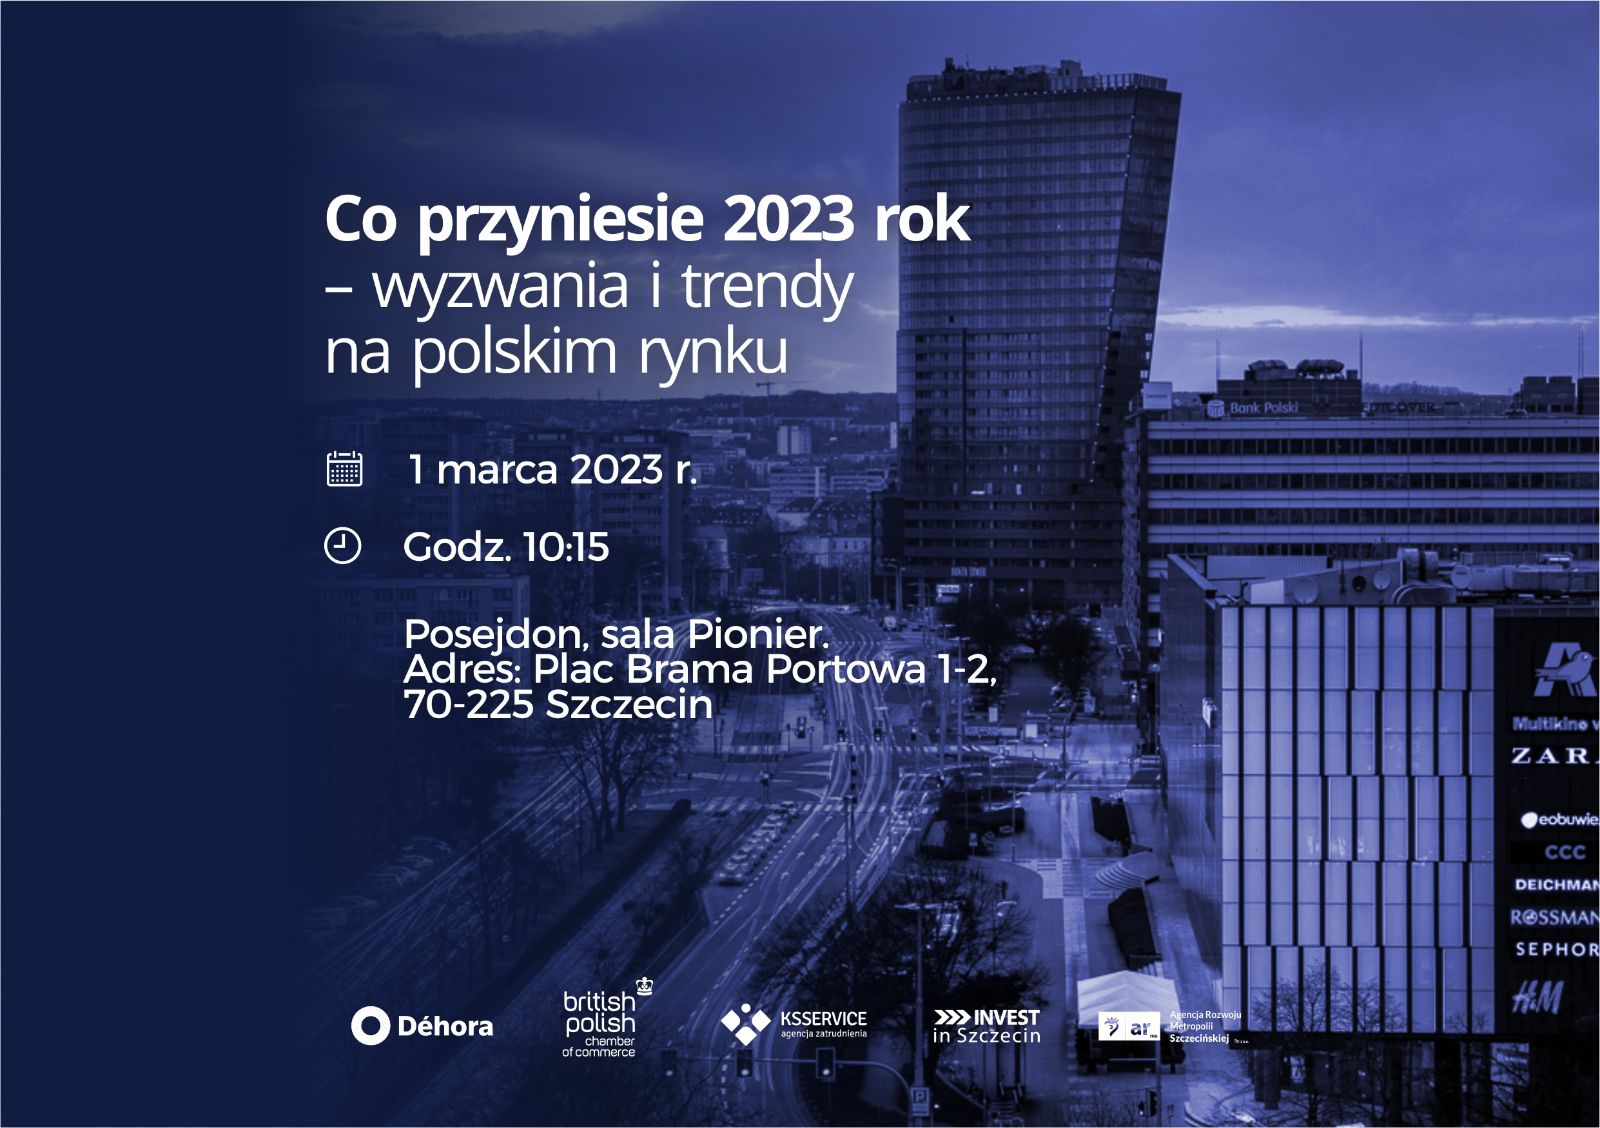 Co przyniesie 2023 rok – wyzwania i trendy na polskim rynku